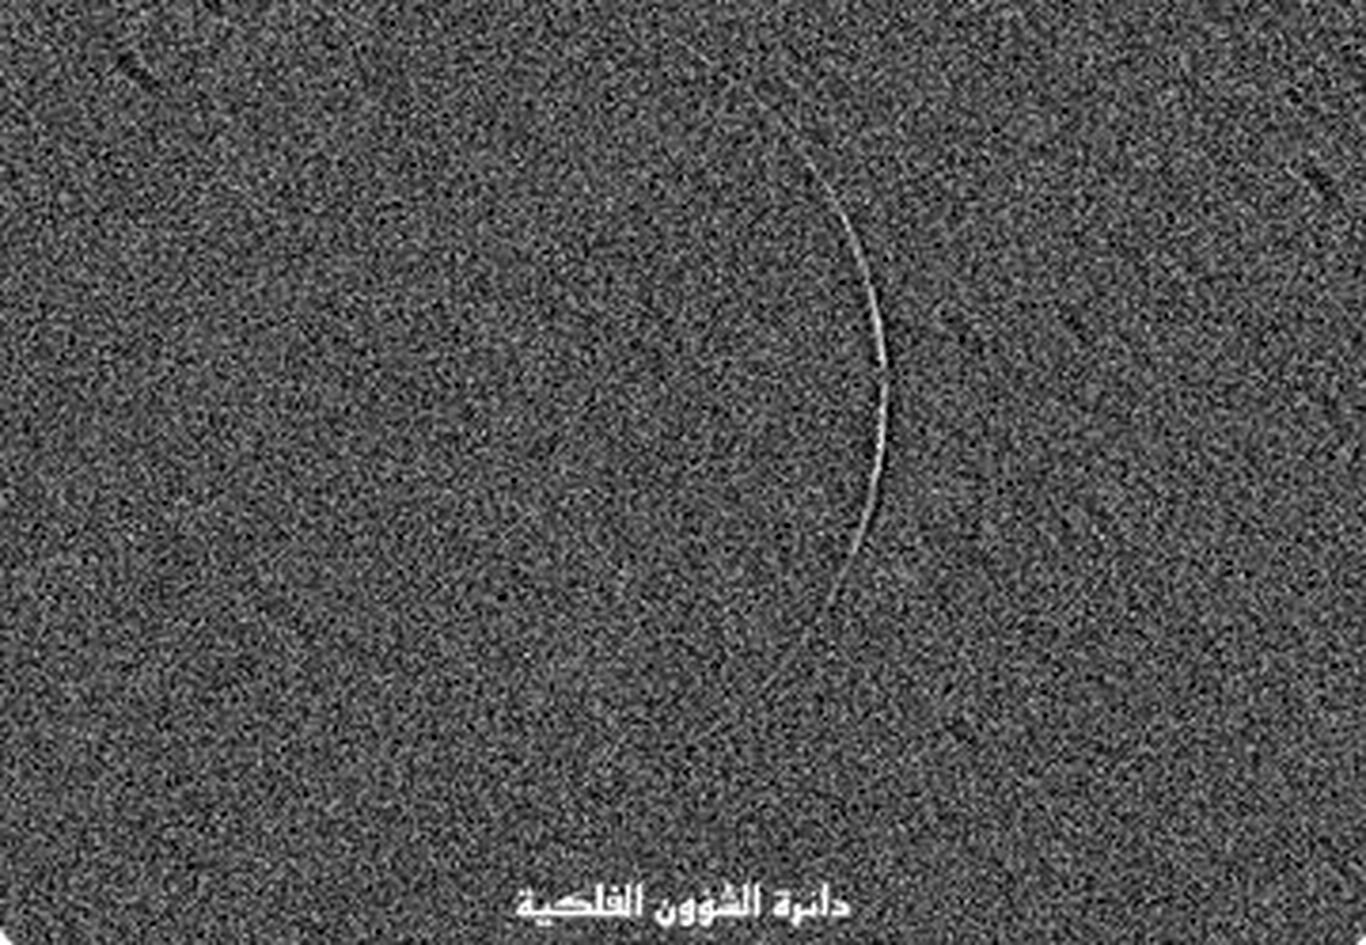 (عکس) عربستانی‌ها با حسگر تصویر ماه را دیدند؛ در ایران و عراق ماه رصد نشد